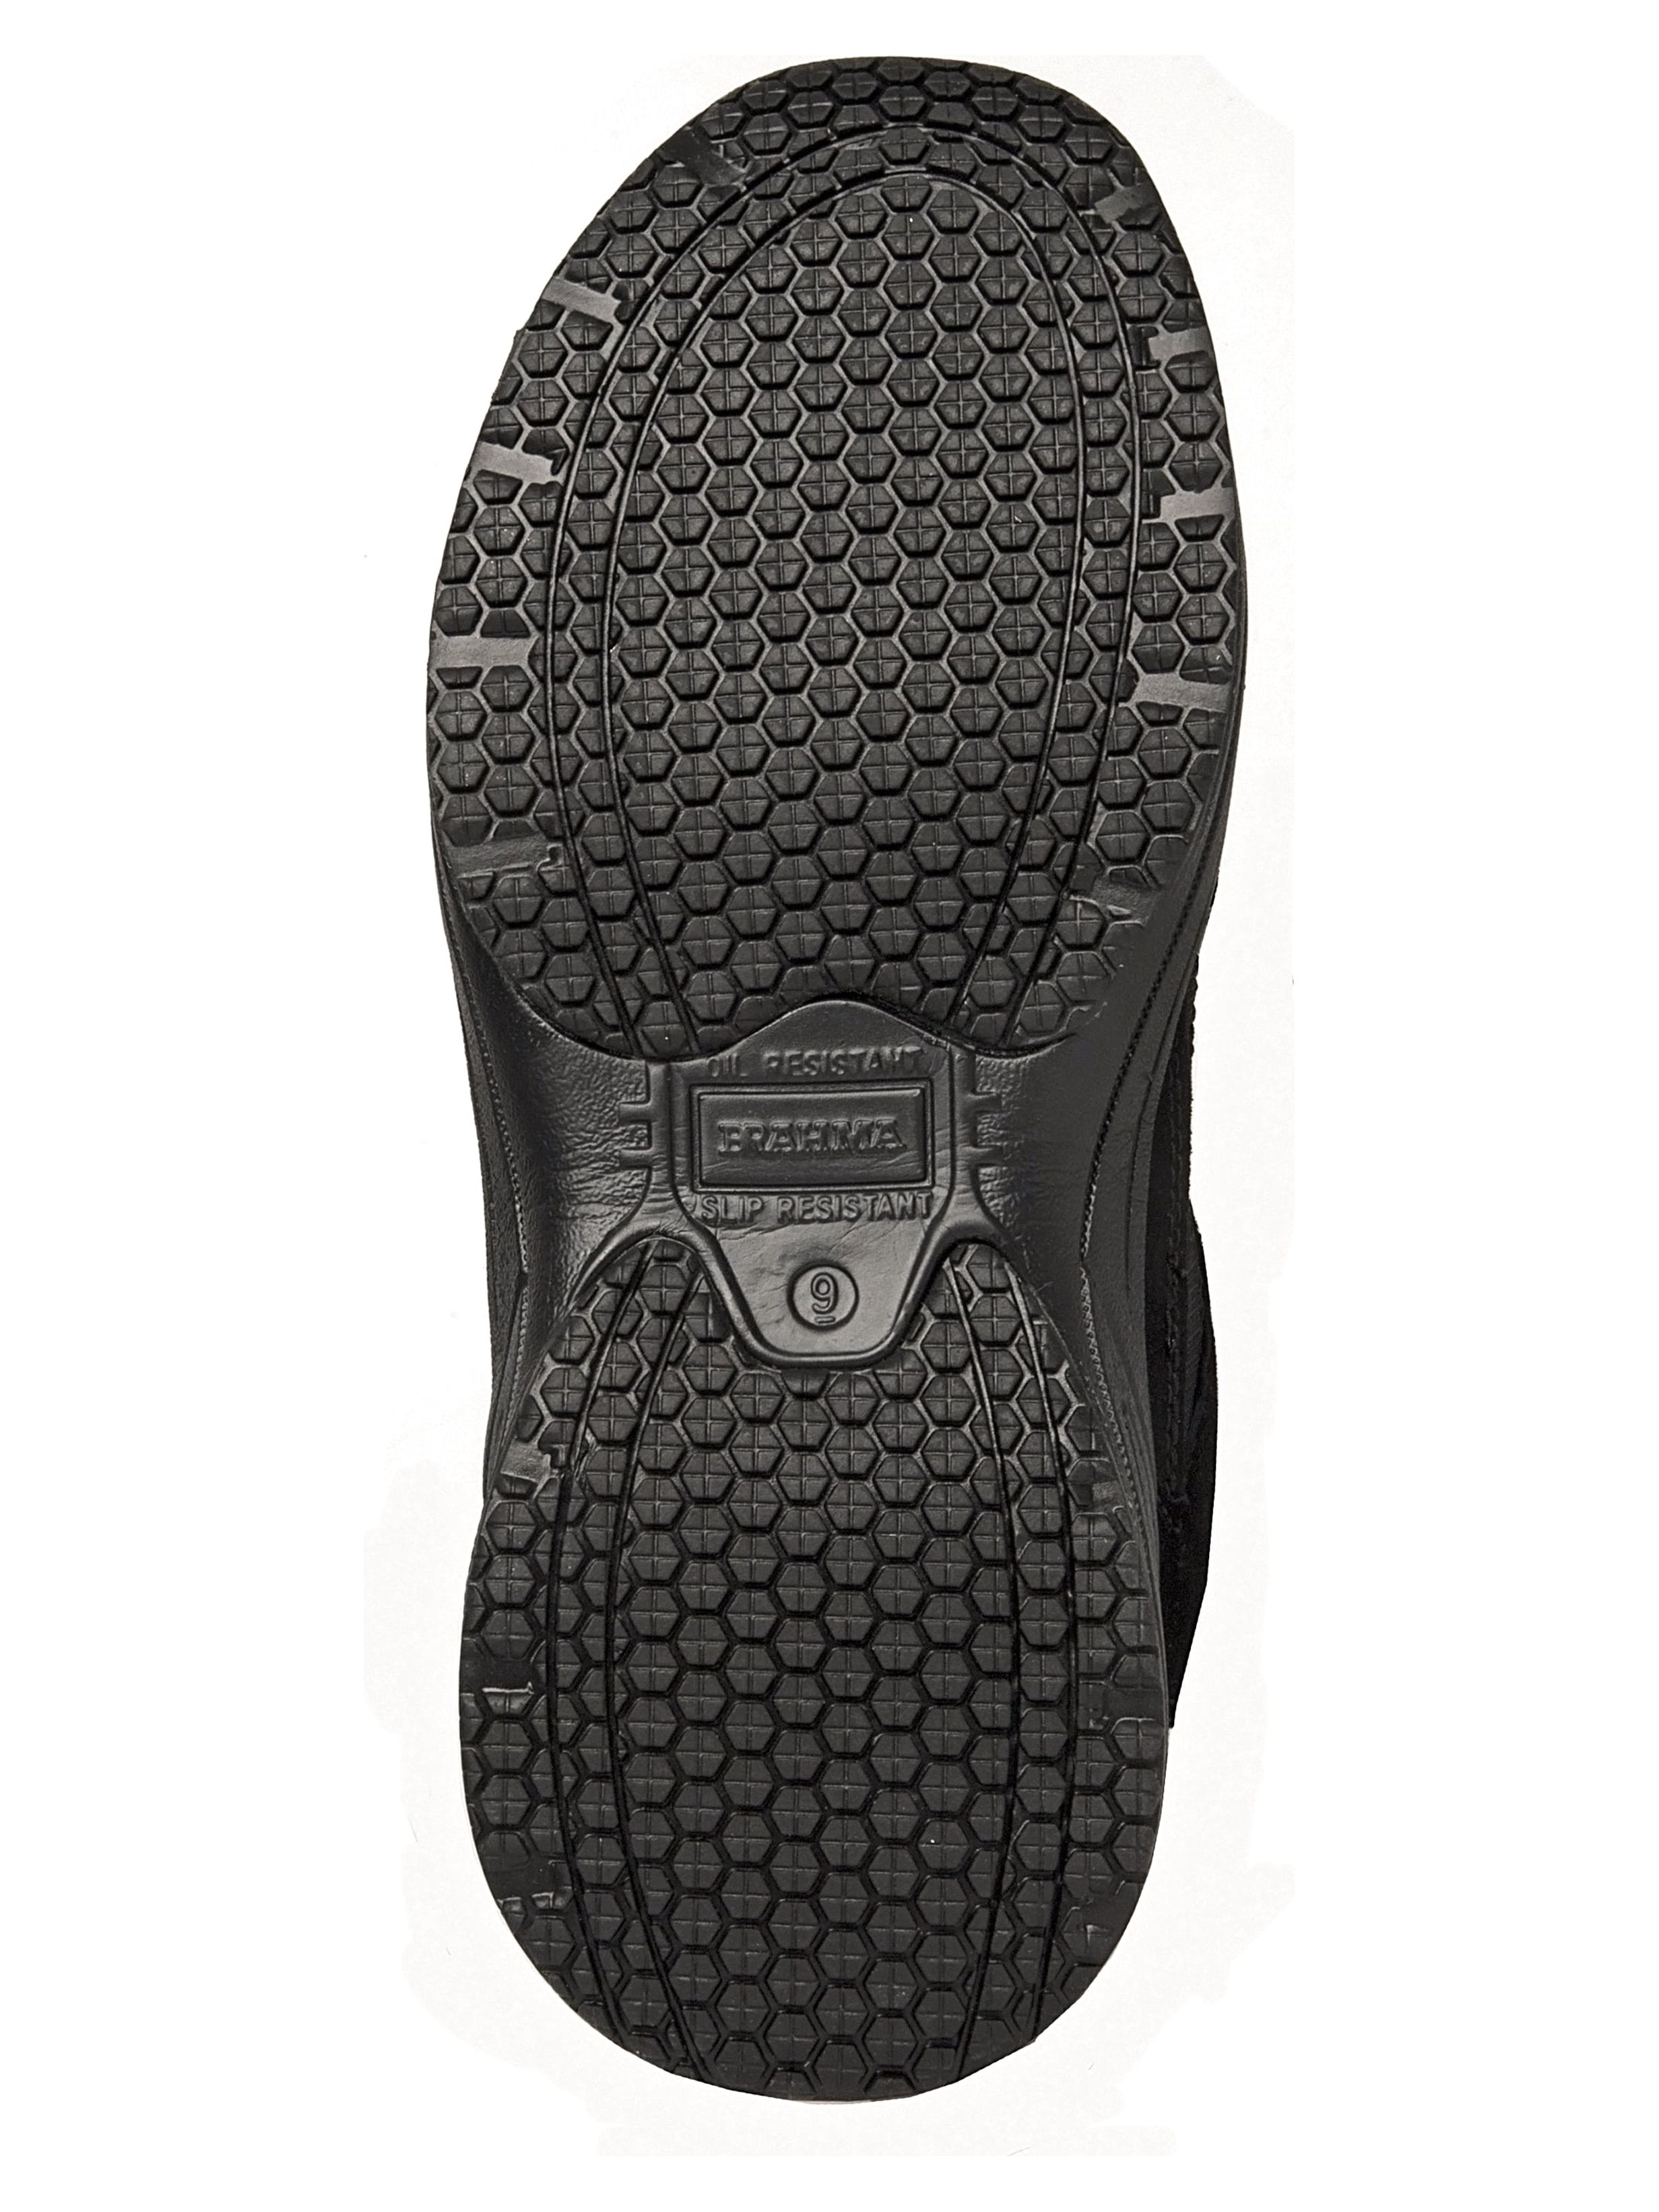 Brahma Men's Adan Steel Toe Work Shoes - image 2 of 5